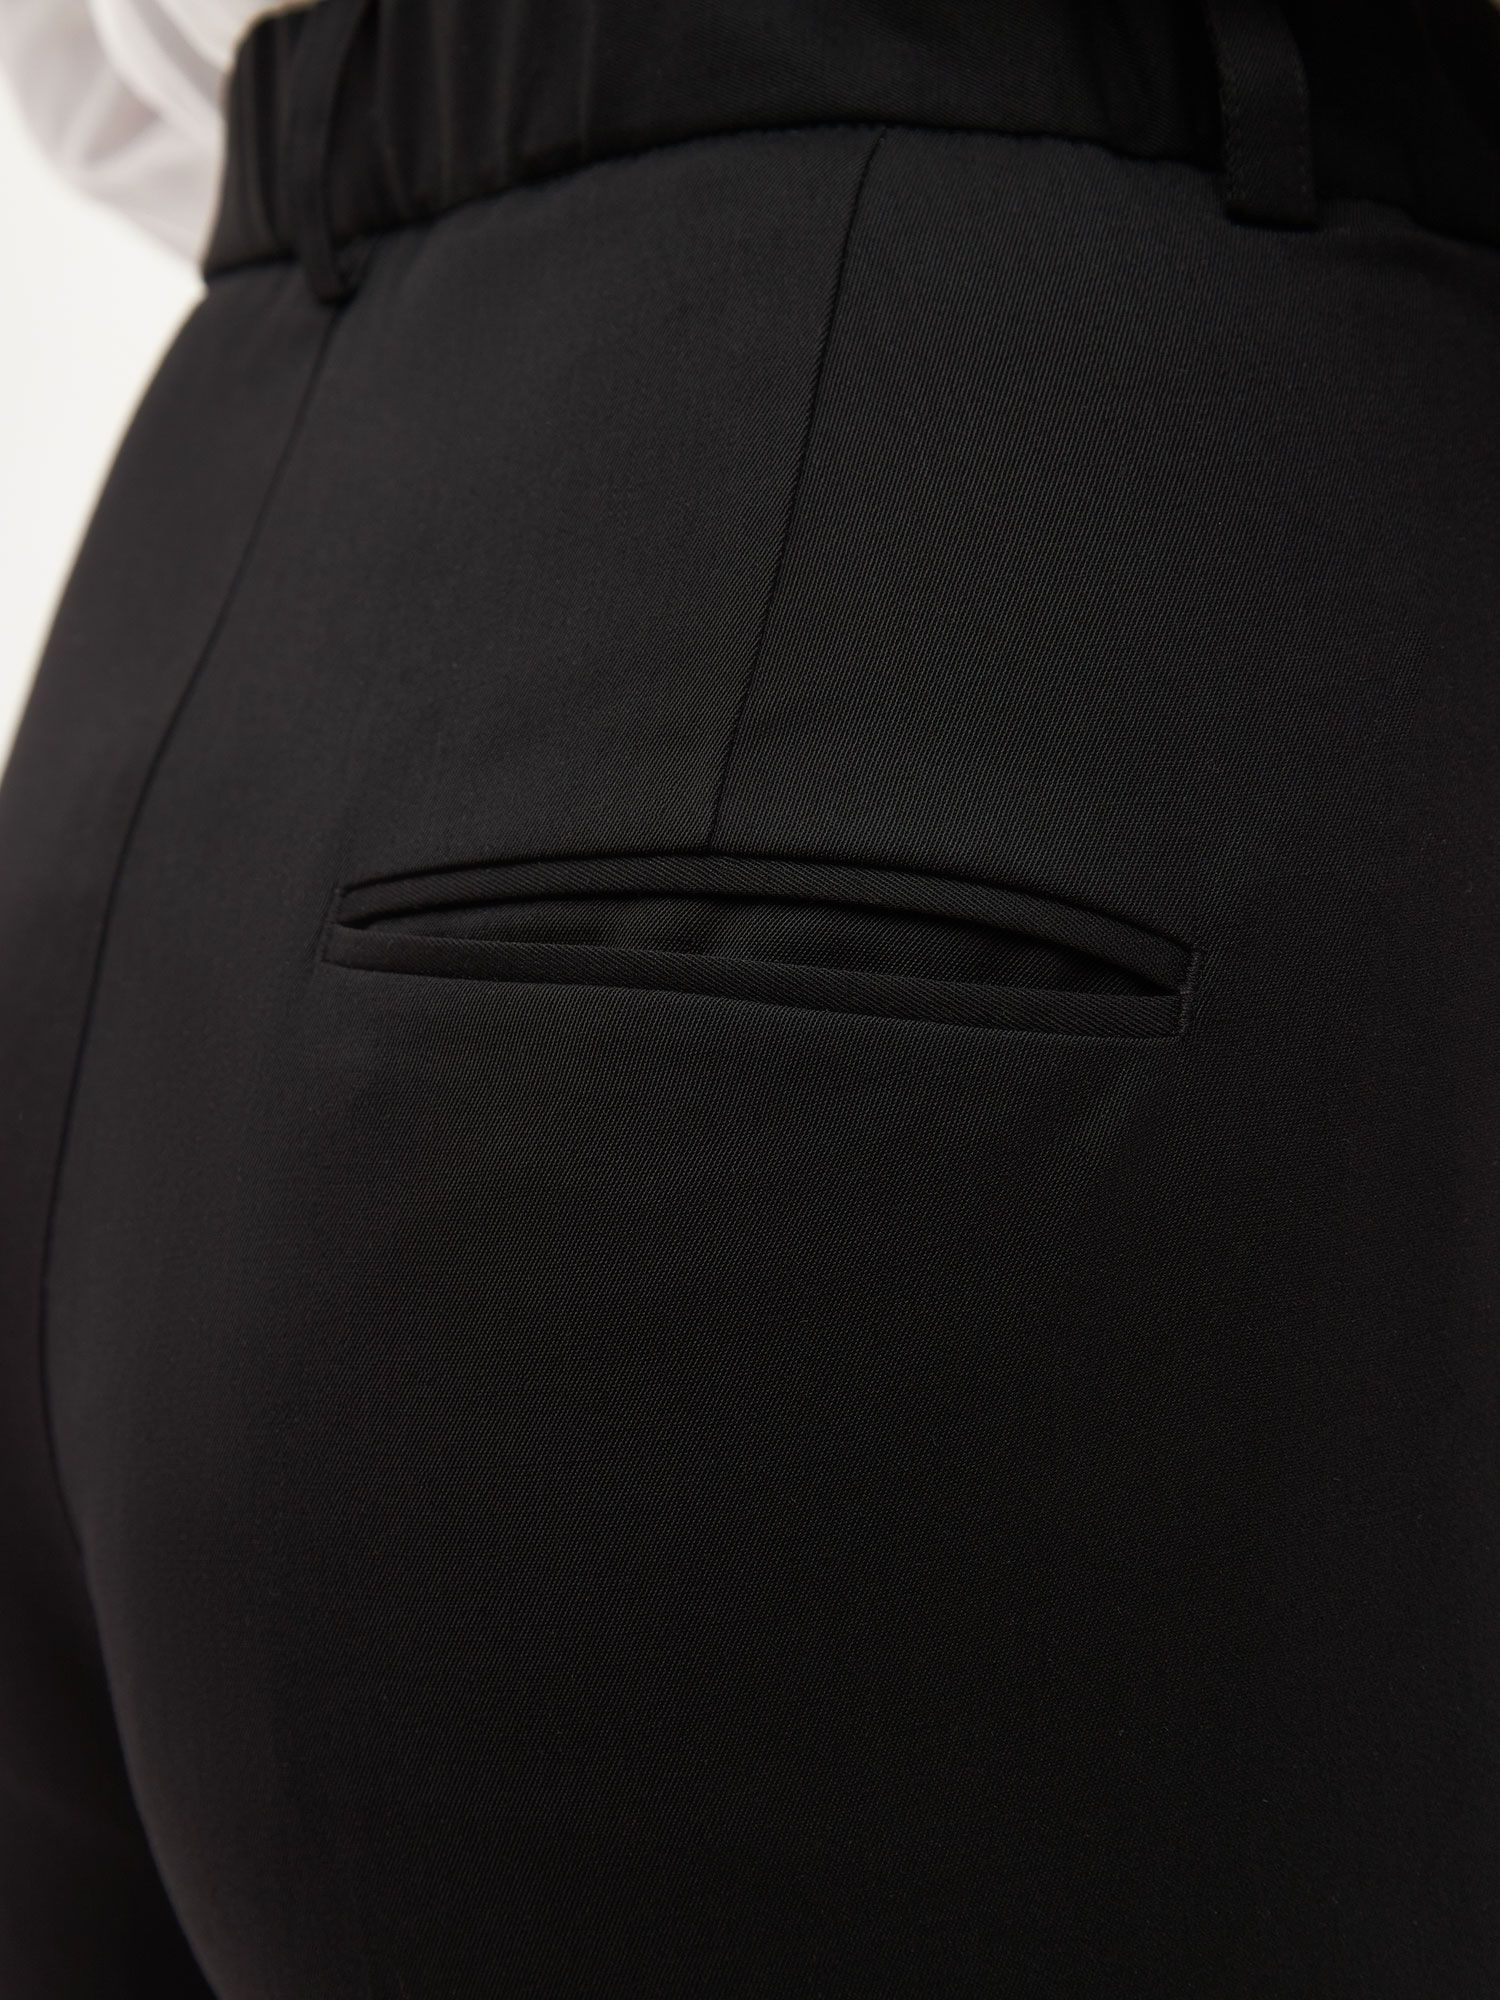 Укороченные брюки из шерсти и переработанного полиэстера. Изображение 5